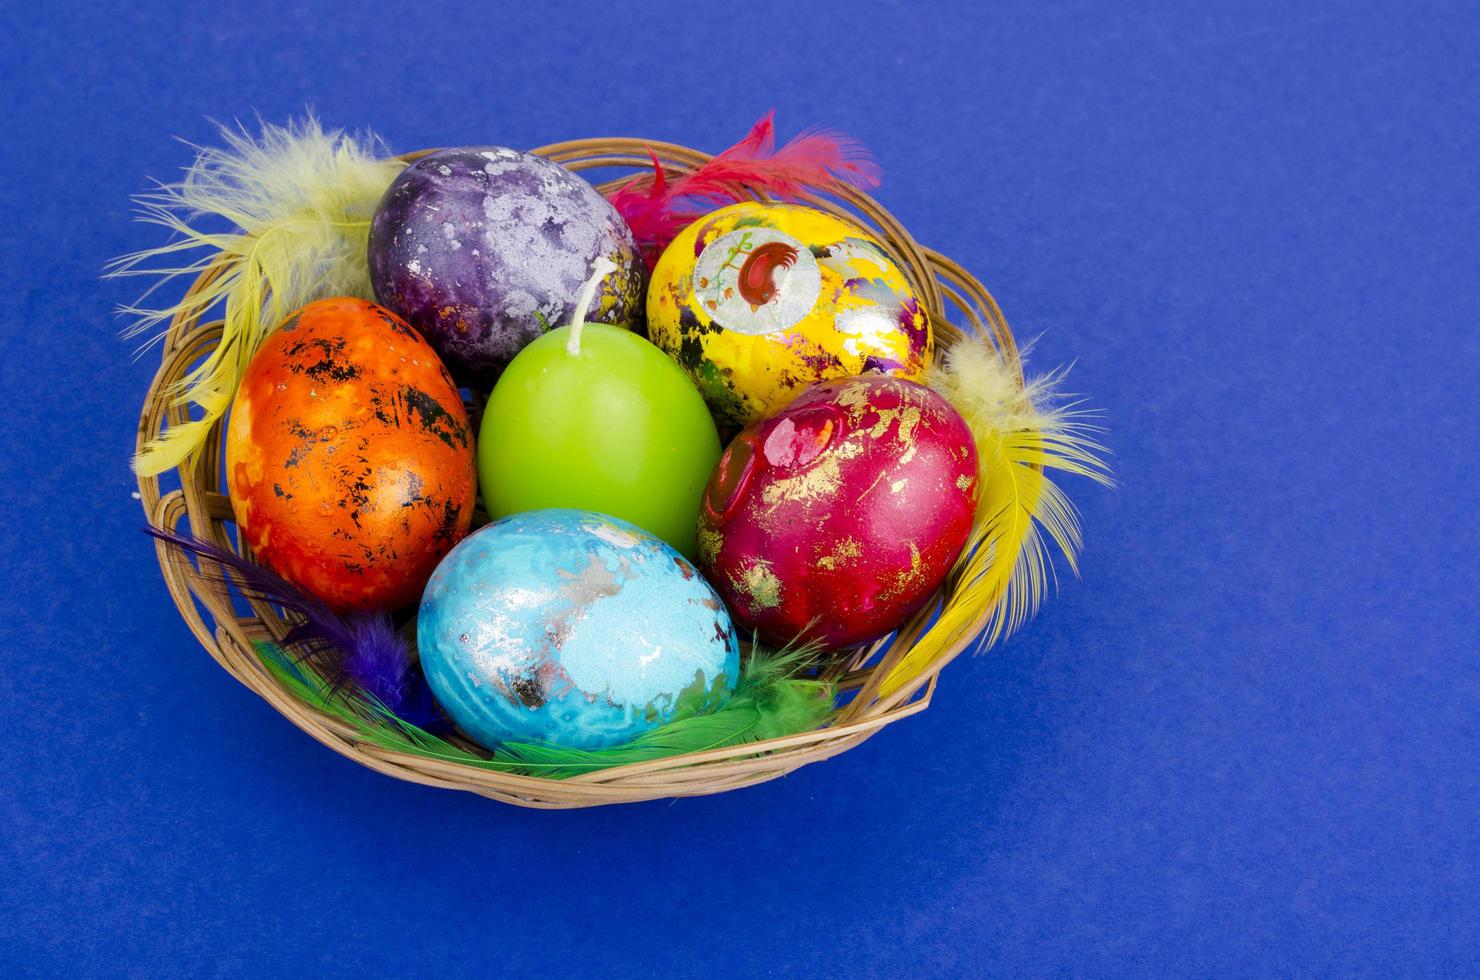 färgade ägg - symbol för firande av påsk foto